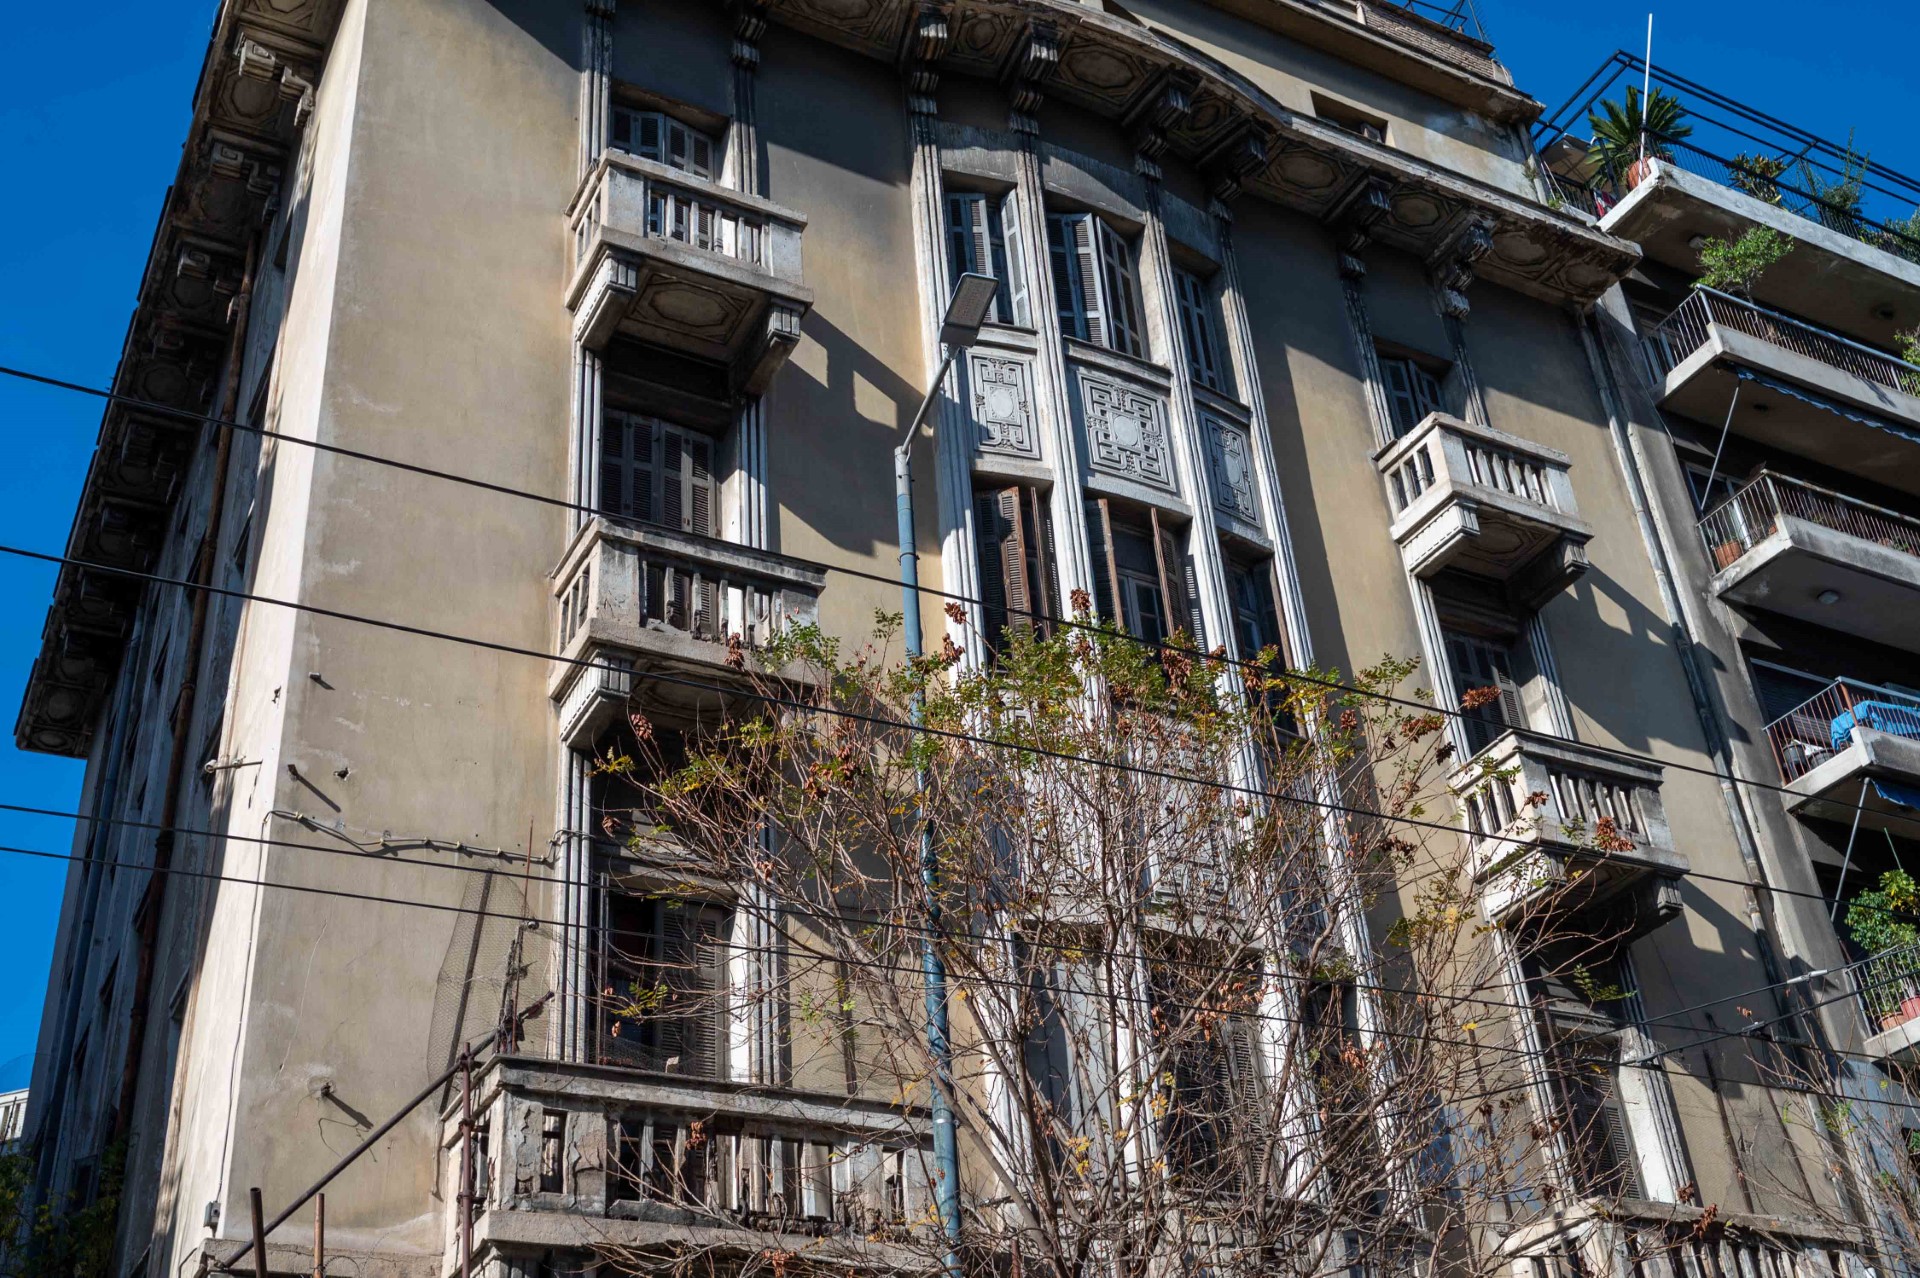 Δήμος Αθηναίων: Προκηρύχθηκε ο διαγωνισμός για την αποκατάσταση του κτιρίου που θα στεγάσει την Ακαδημία Λυρικής Τέχνης «Maria Callas»